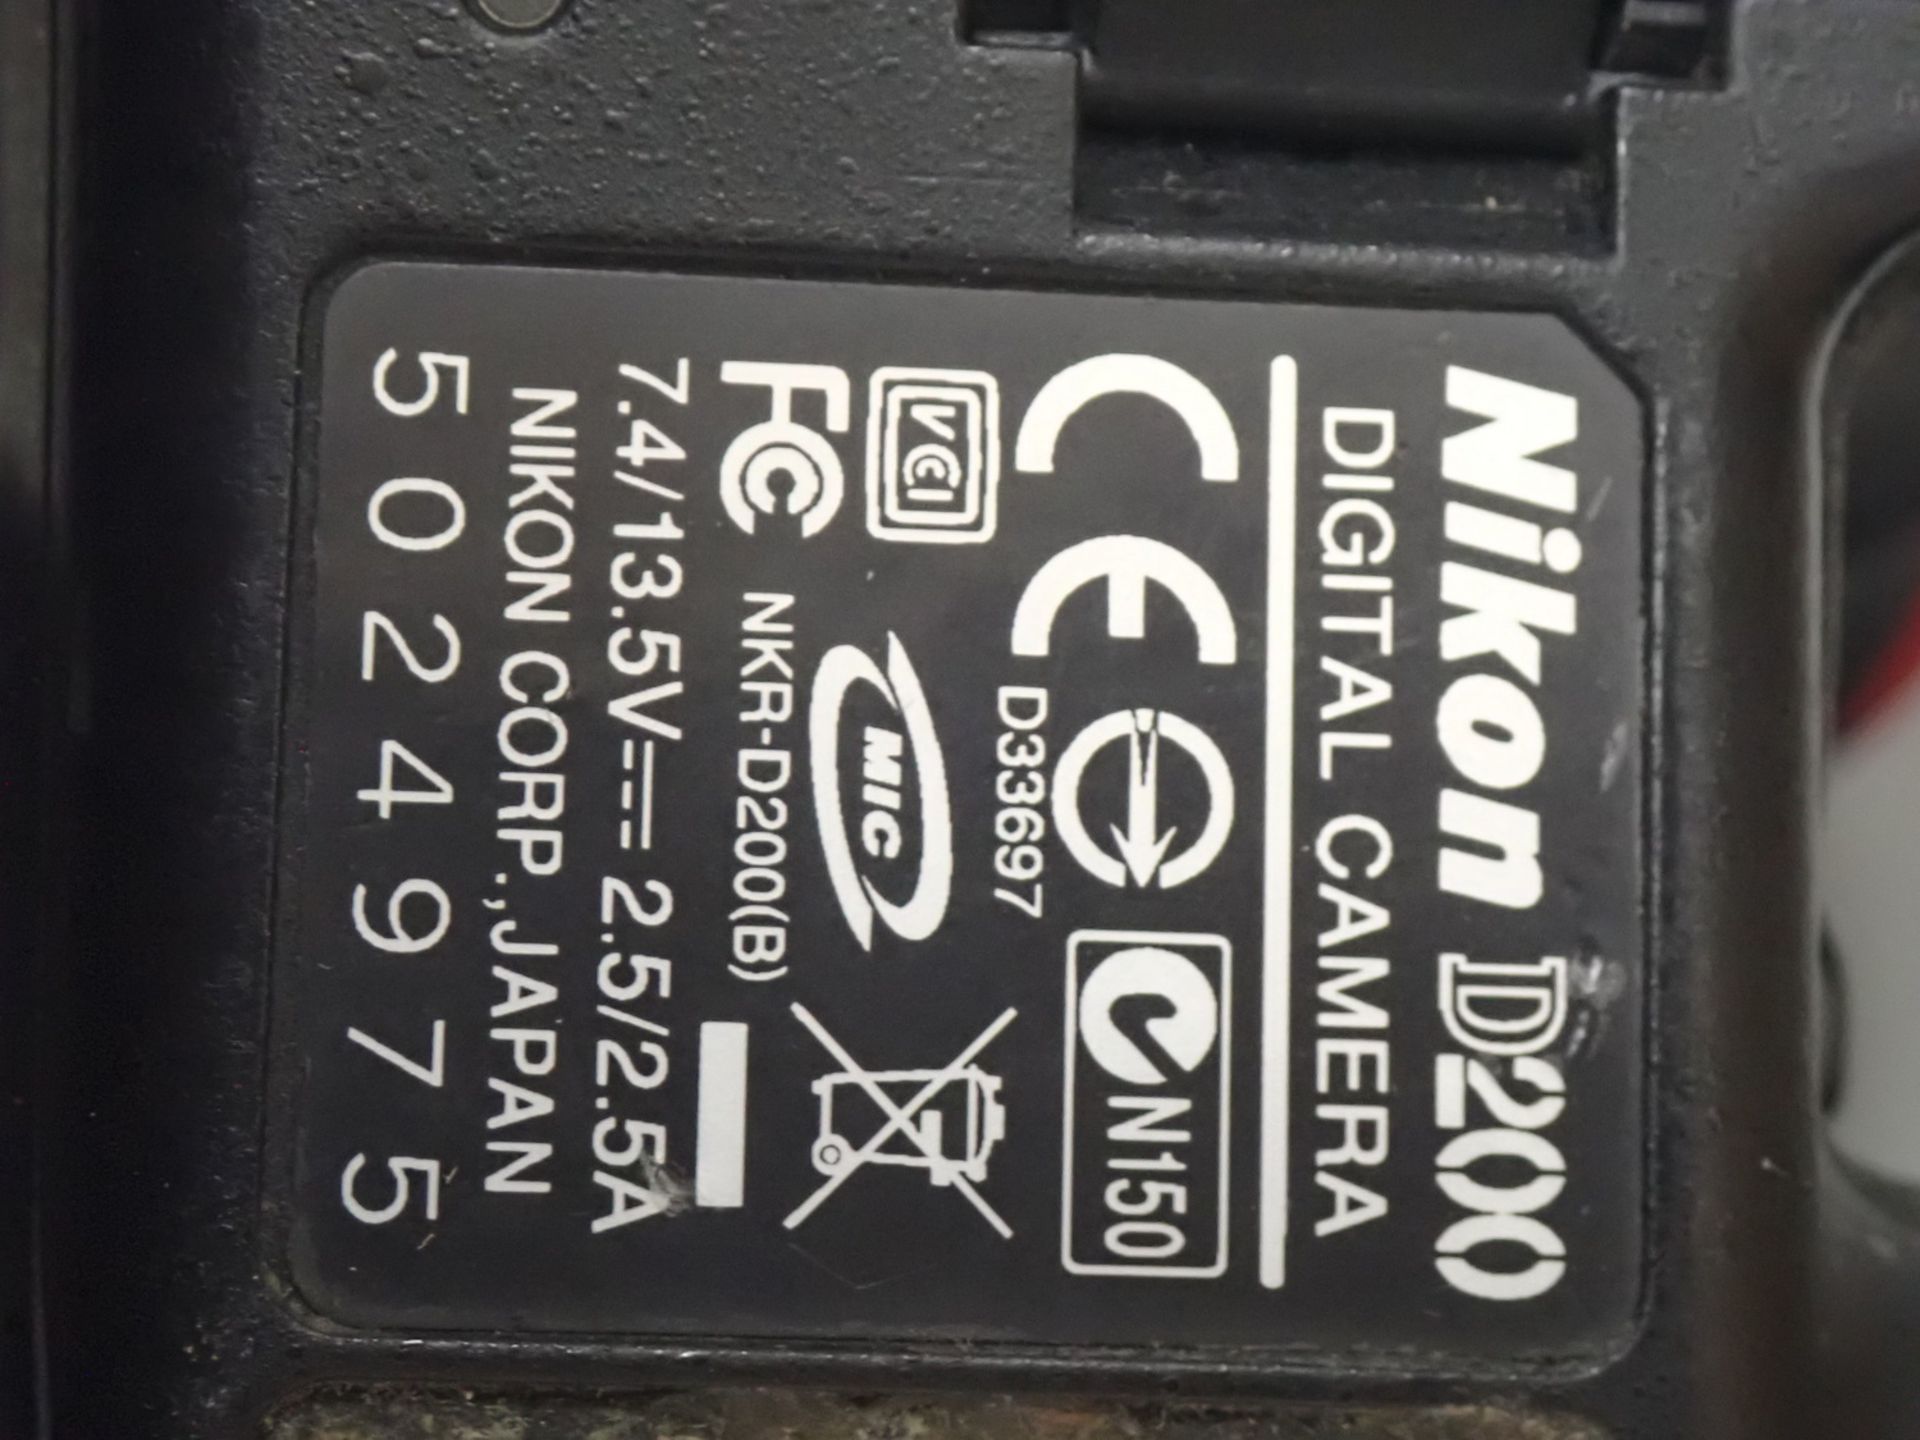 NIKON D200 DSLR 10.2MP CAMERA C/W LENS & BOX - Image 6 of 6